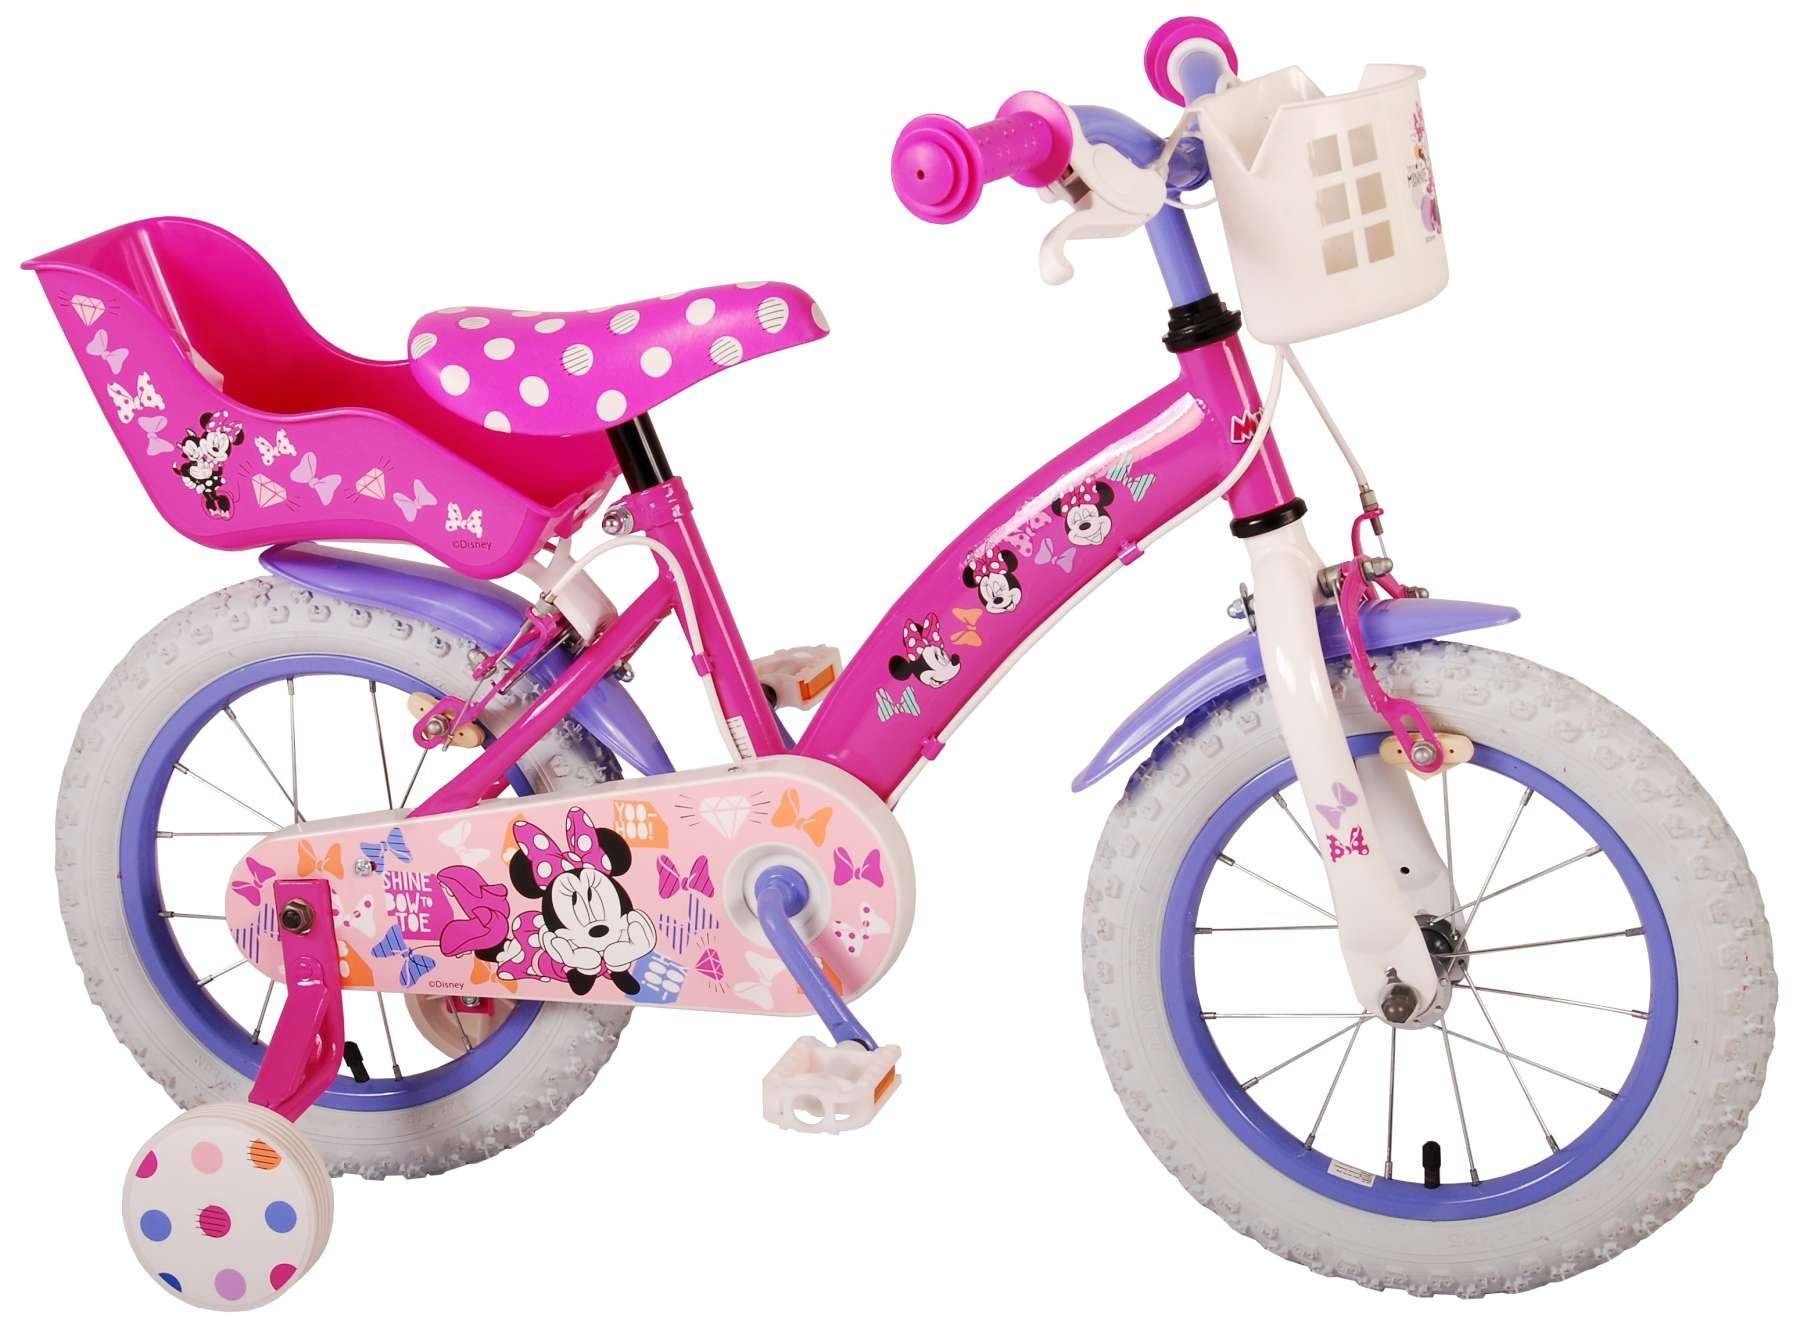 TPFSports Kinderfahrrad Disney Minnie 14 Zoll mit 2x Handbremse, 1 Gang, (Mädchen Fahrrad - Rutschfeste Sicherheitsgriffe), Kinder Fahrrad 14 Zoll mit Stützräder Laufrad Mädchen Kinderrad